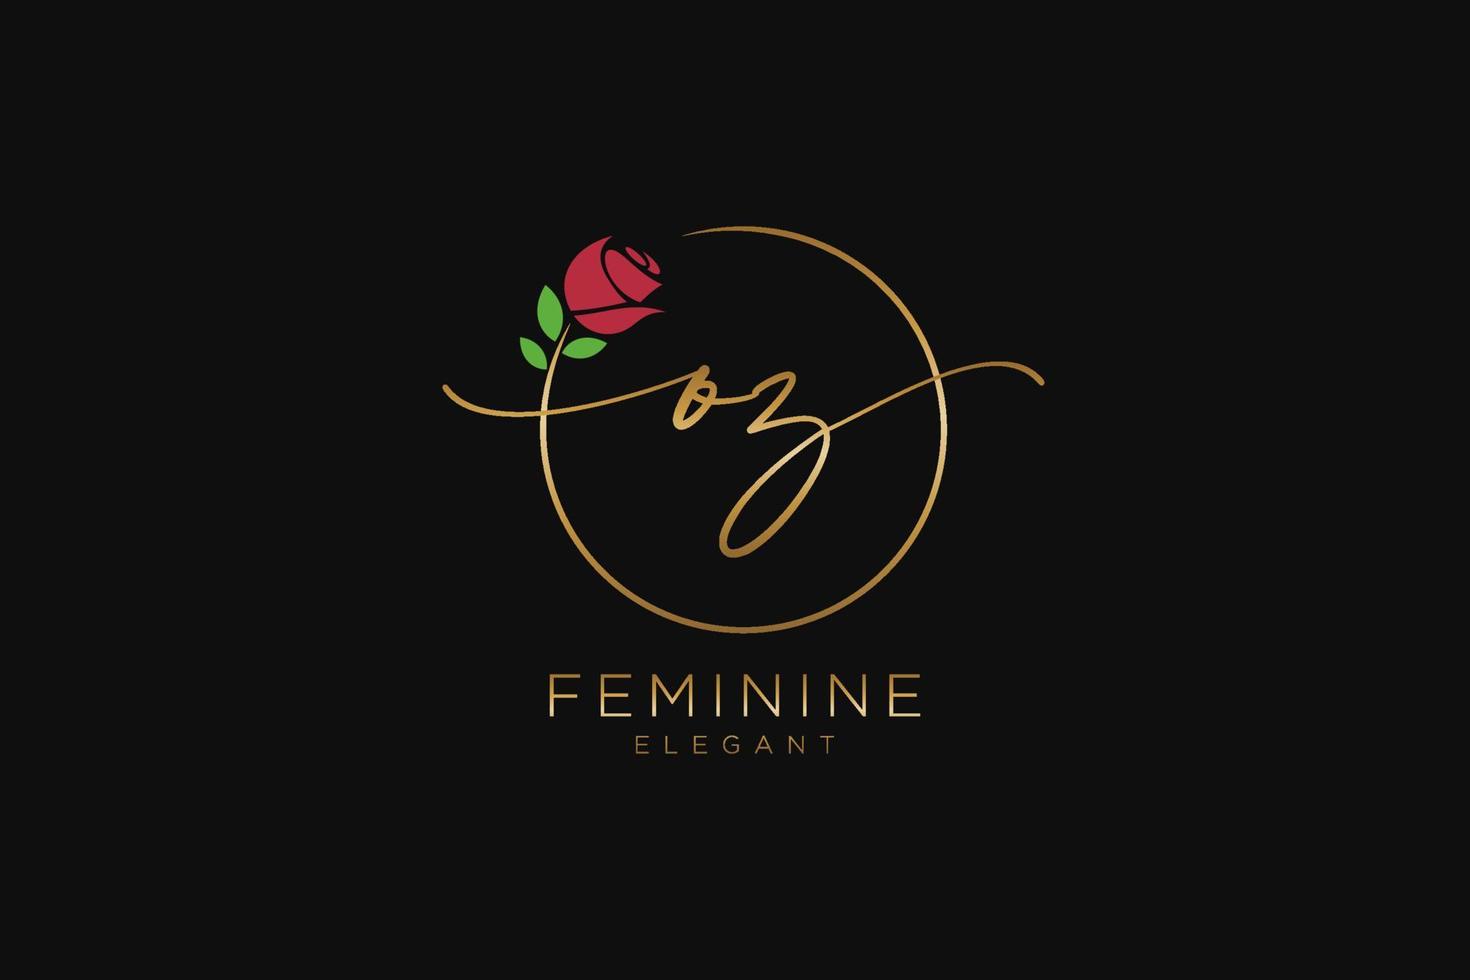 monogramme de beauté du logo féminin initial oz et design élégant du logo, logo manuscrit de la signature initiale, mariage, mode, floral et botanique avec modèle créatif. vecteur